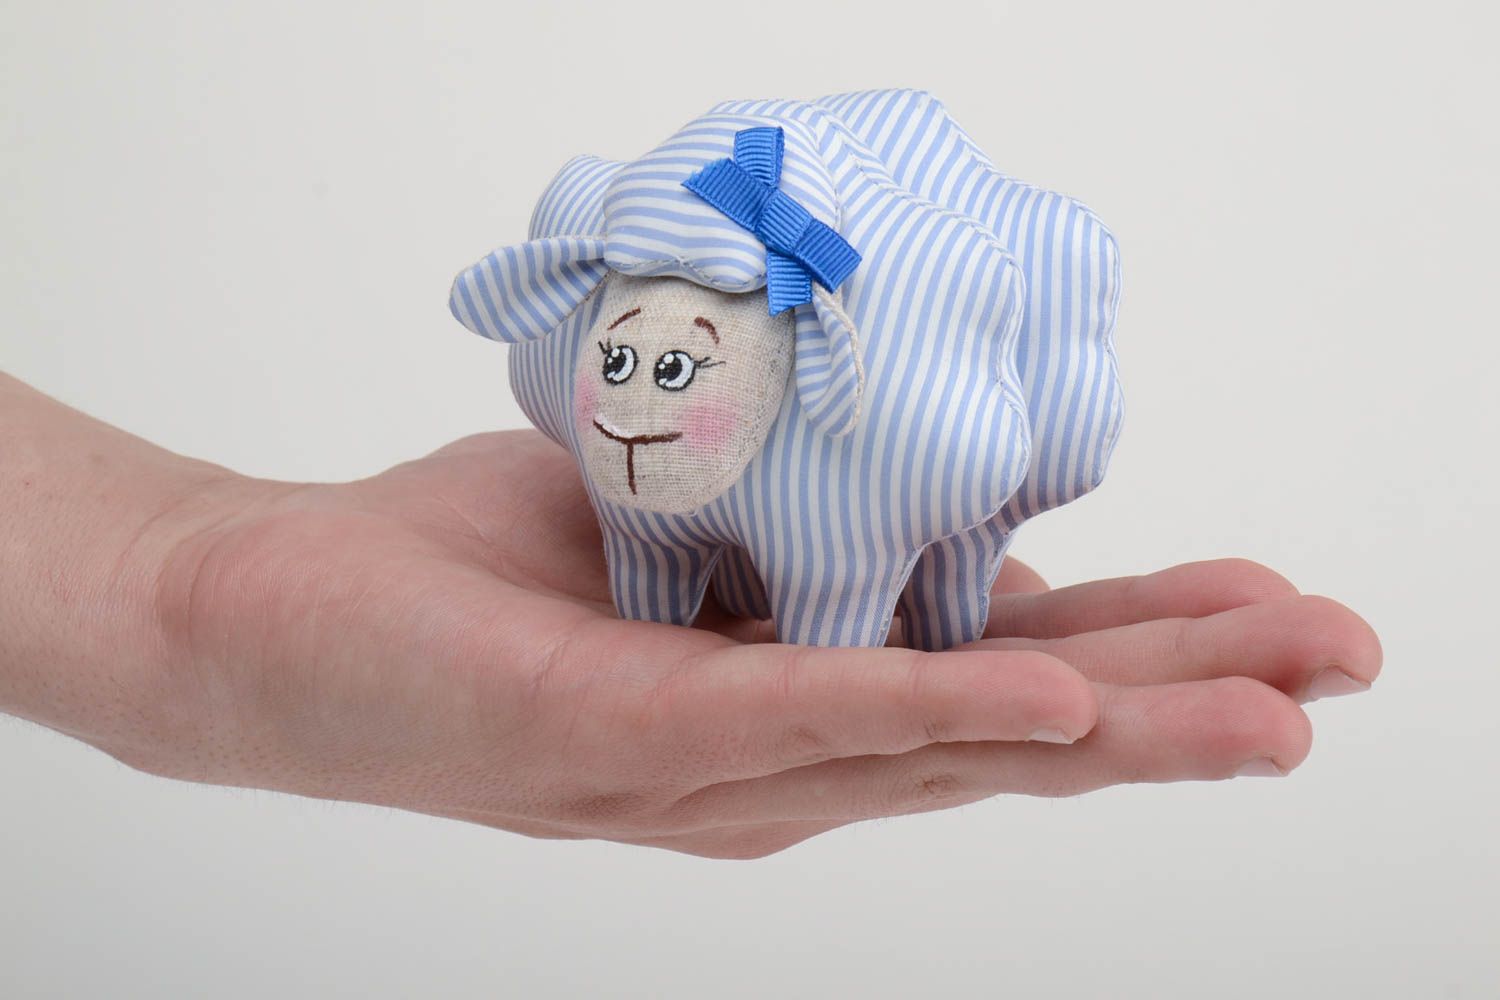 Мягкая тканевая игрушка овечка из льна расписная ручной работы голубая в полоску фото 5